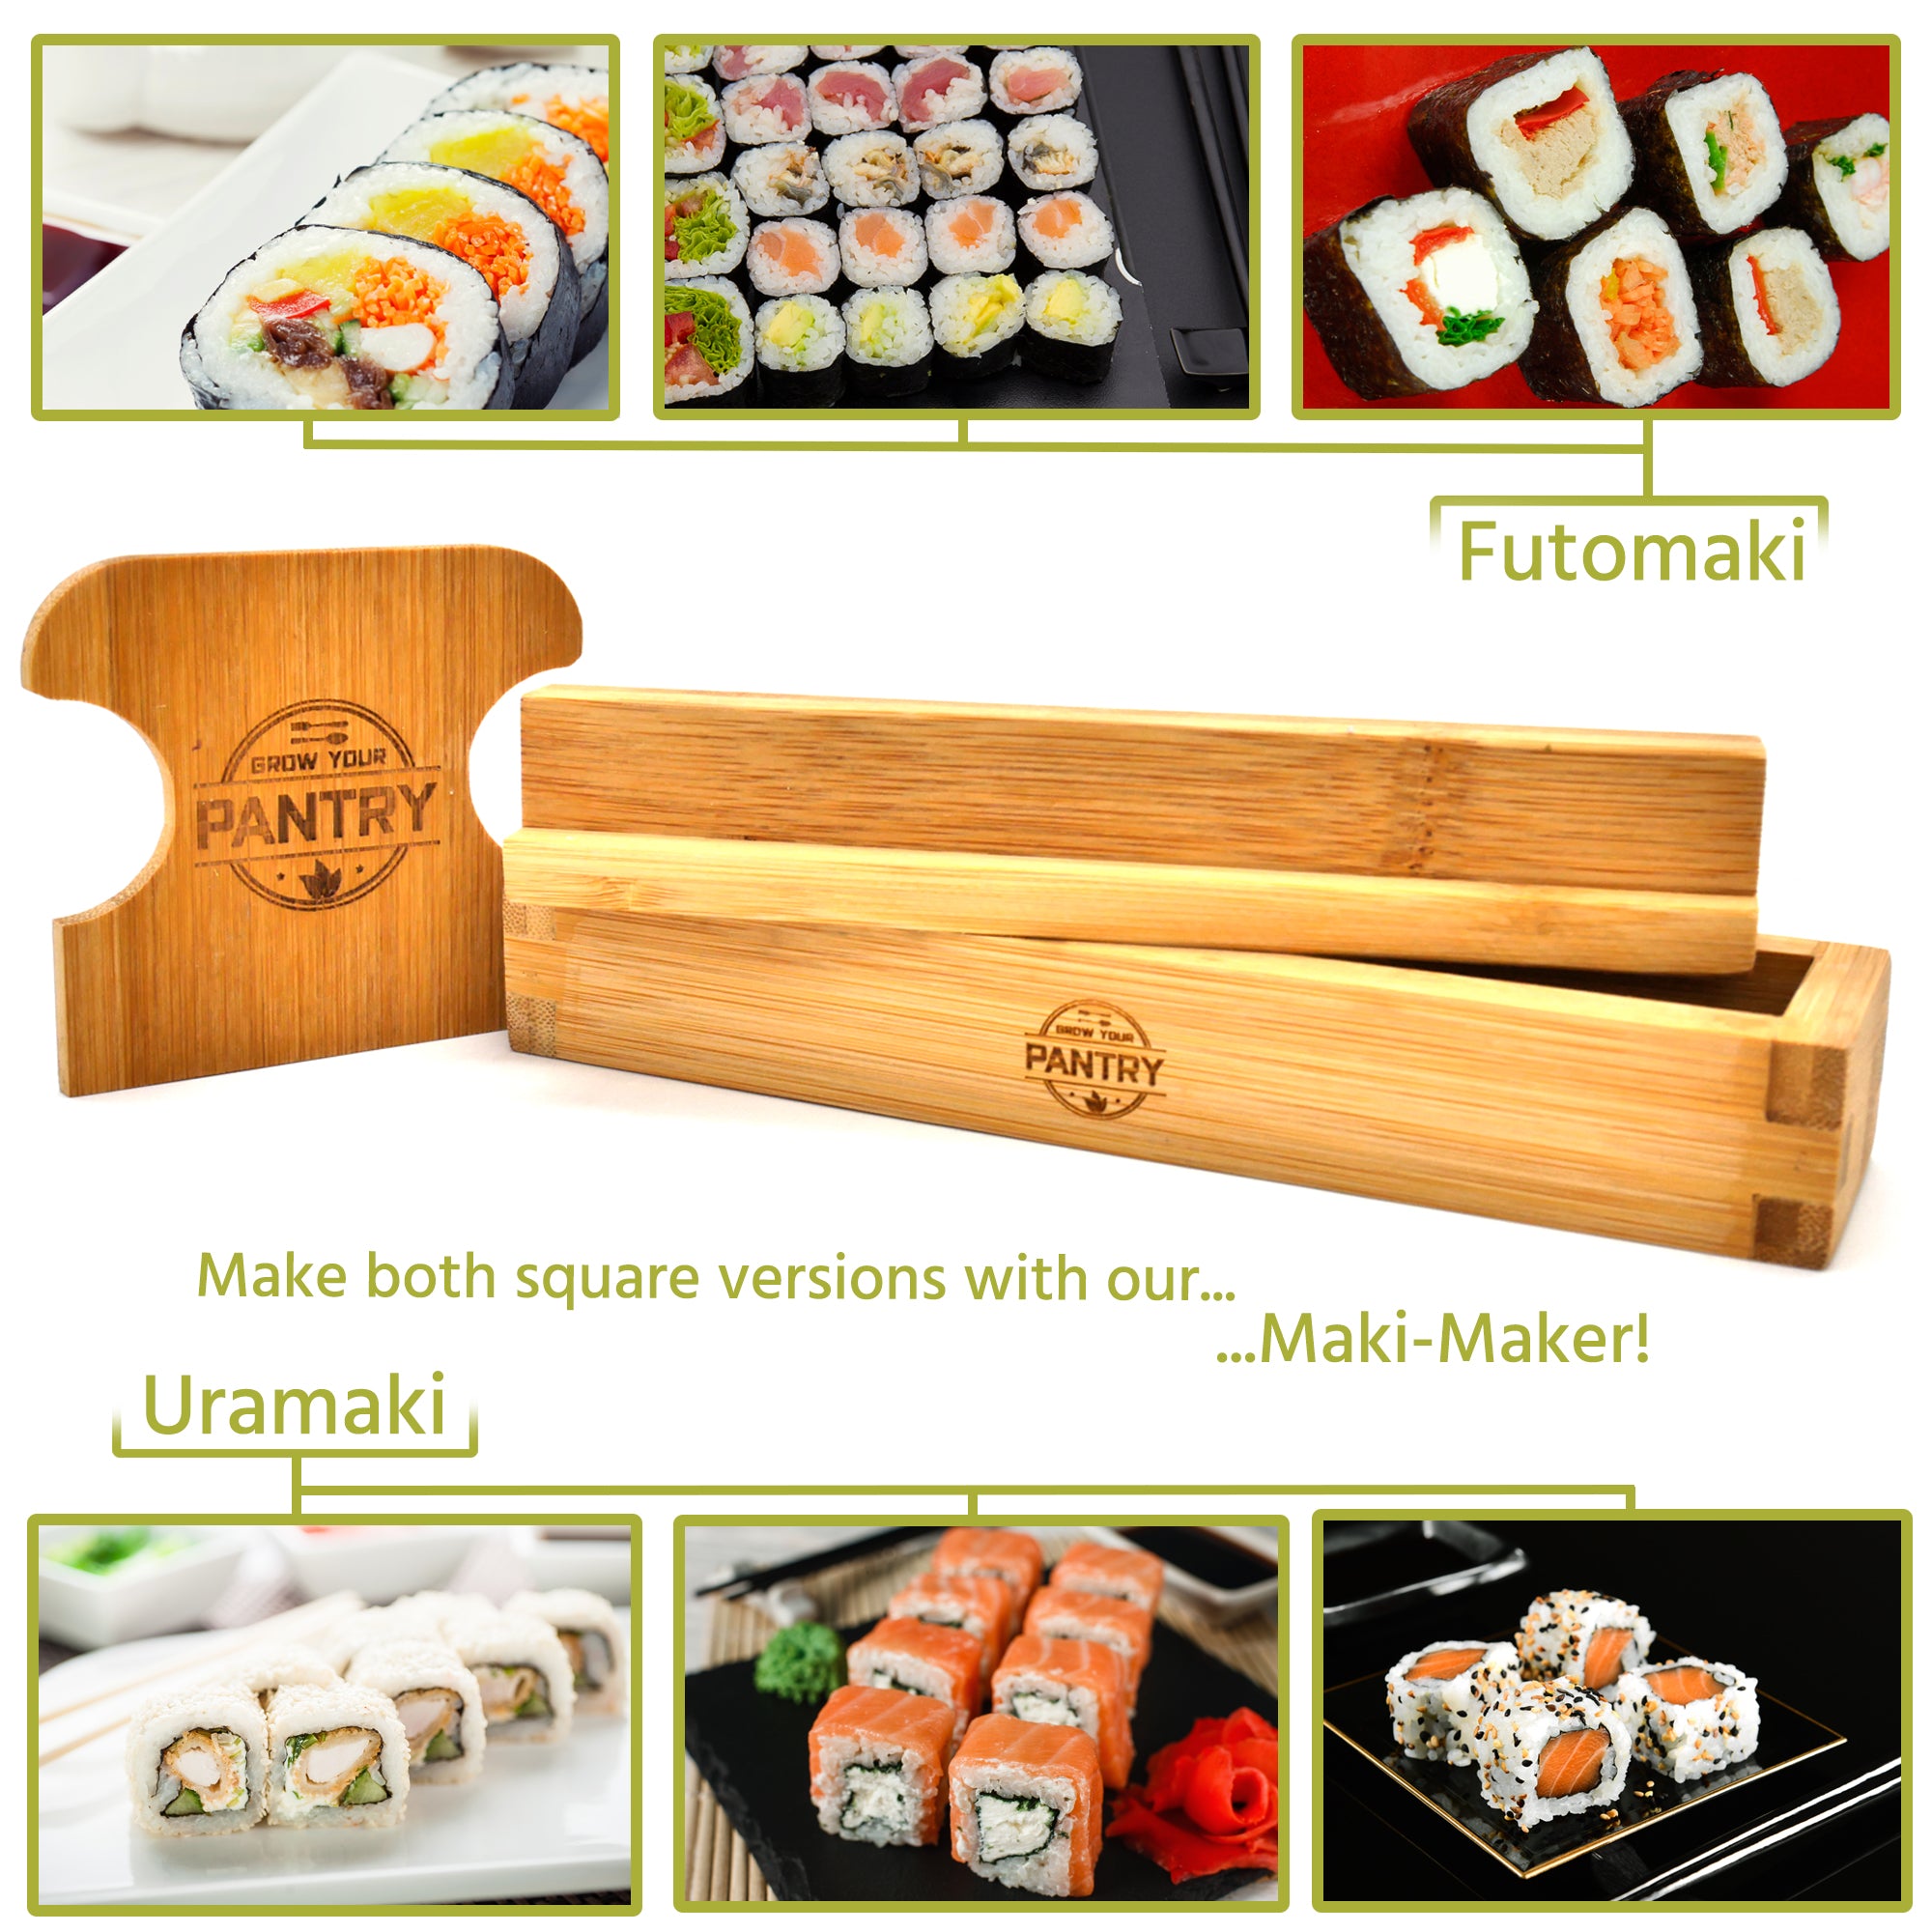 Soeos Beginner Sushi Making Kit 10 Piece, Complete Bamboo Sushi Kit, Sushi Making Gift Set